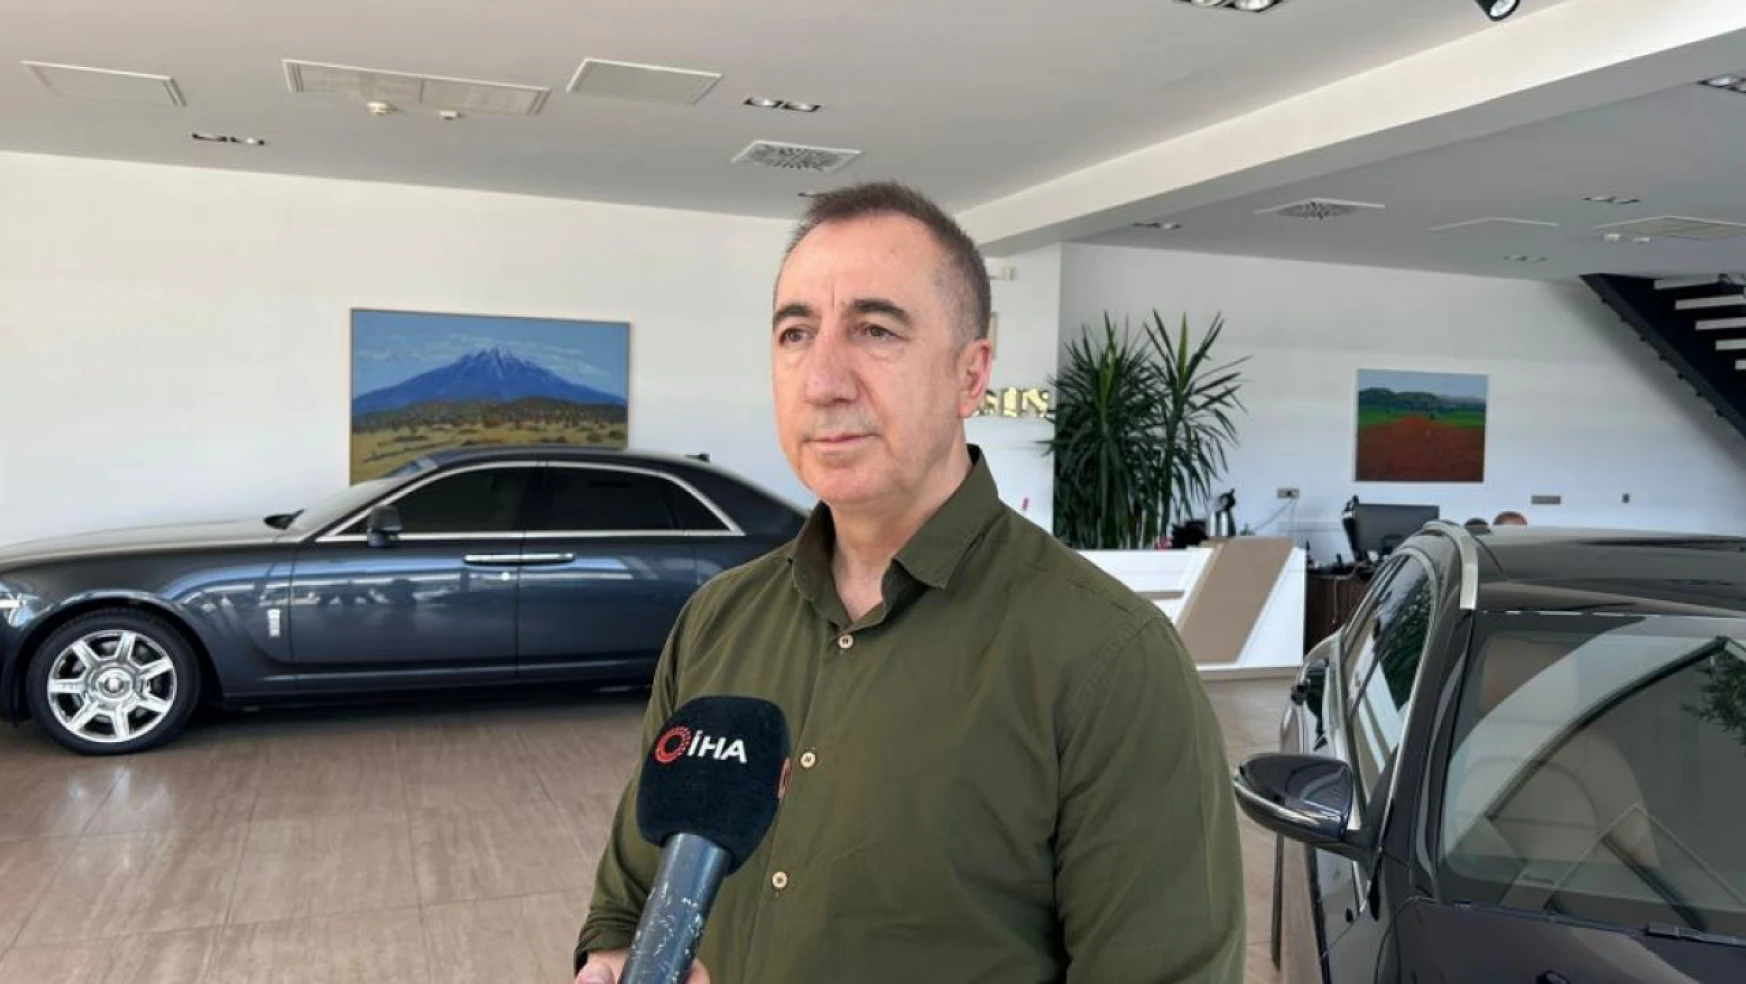 Otonomi Yönetim Kurulu Başkanı Erkoç: 'Otomobil yatırım aracı olmaktan çıktı'